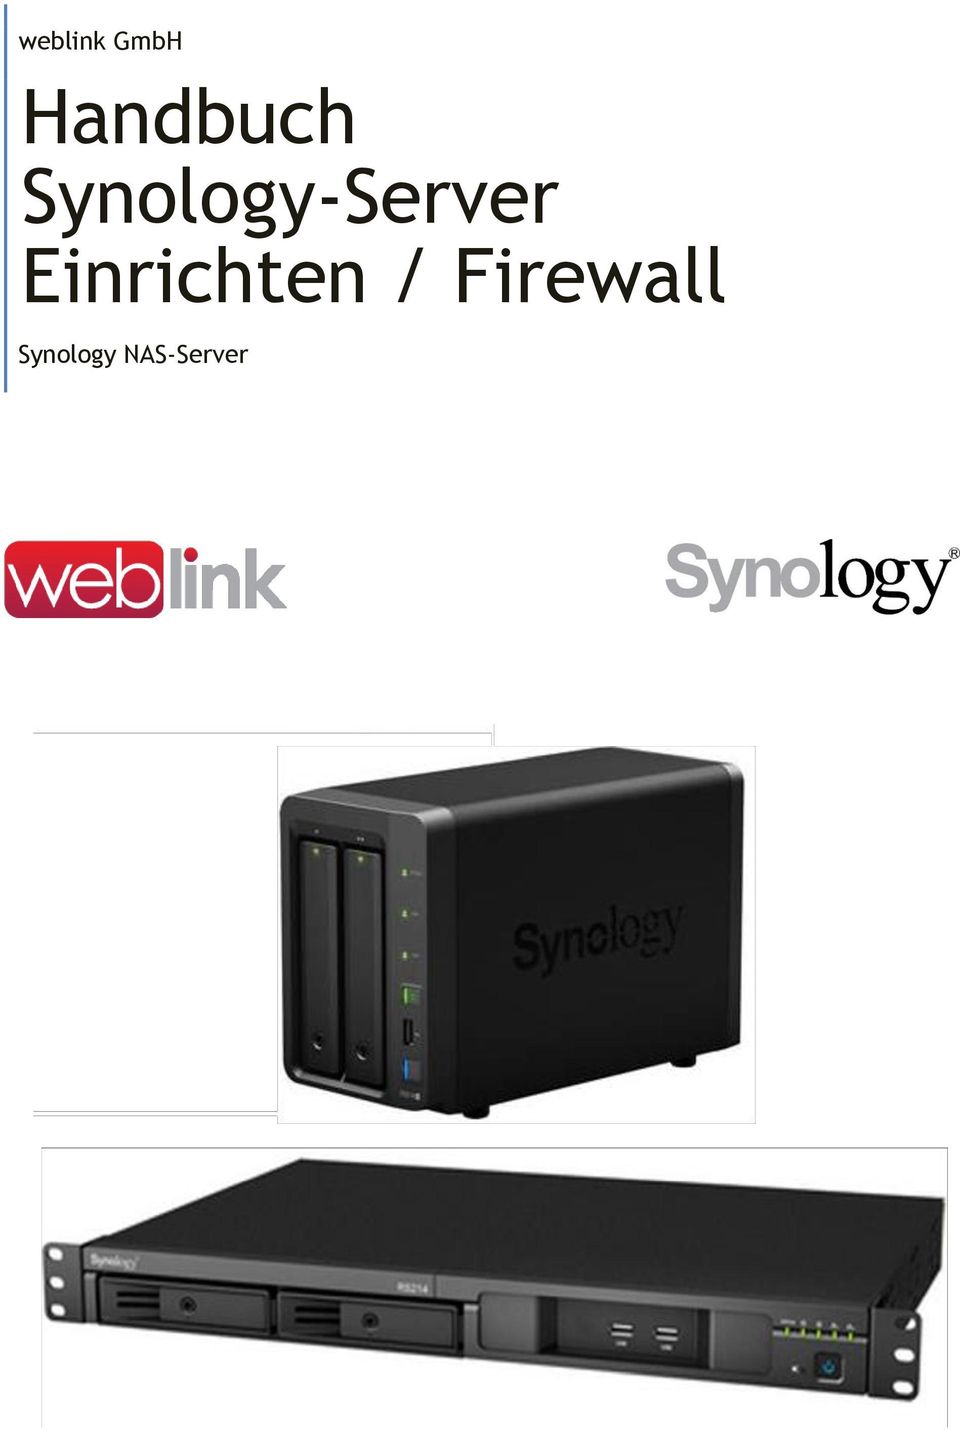 Synology-Server